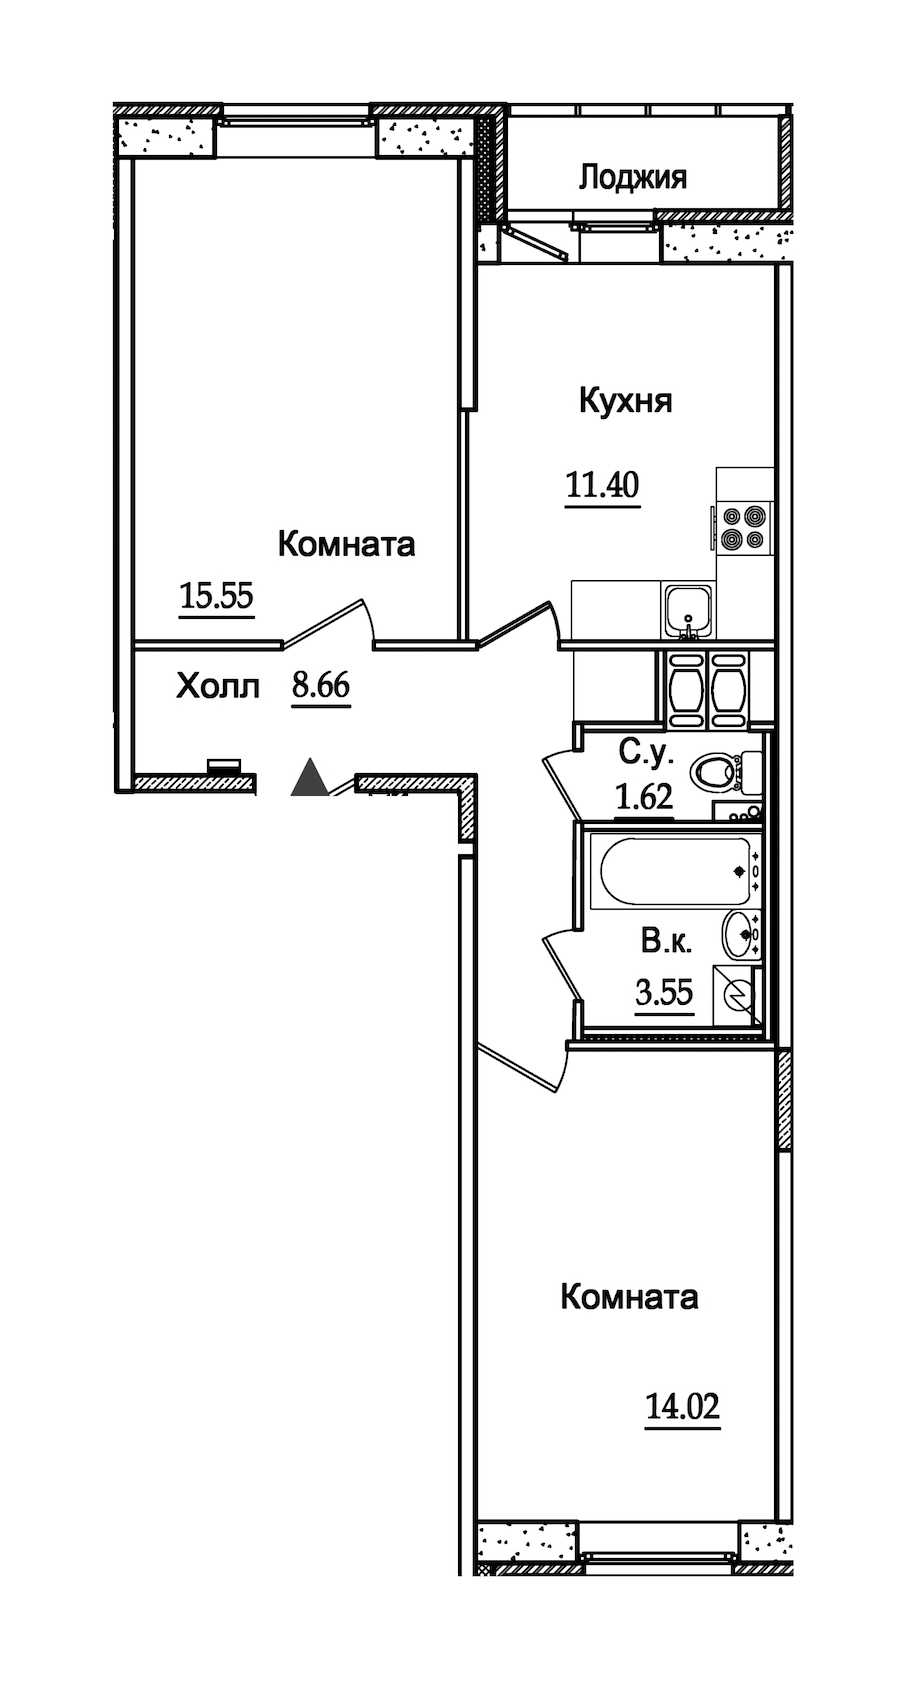 Двухкомнатная квартира в : площадь 56.06 м2 , этаж: 5 – купить в Санкт-Петербурге